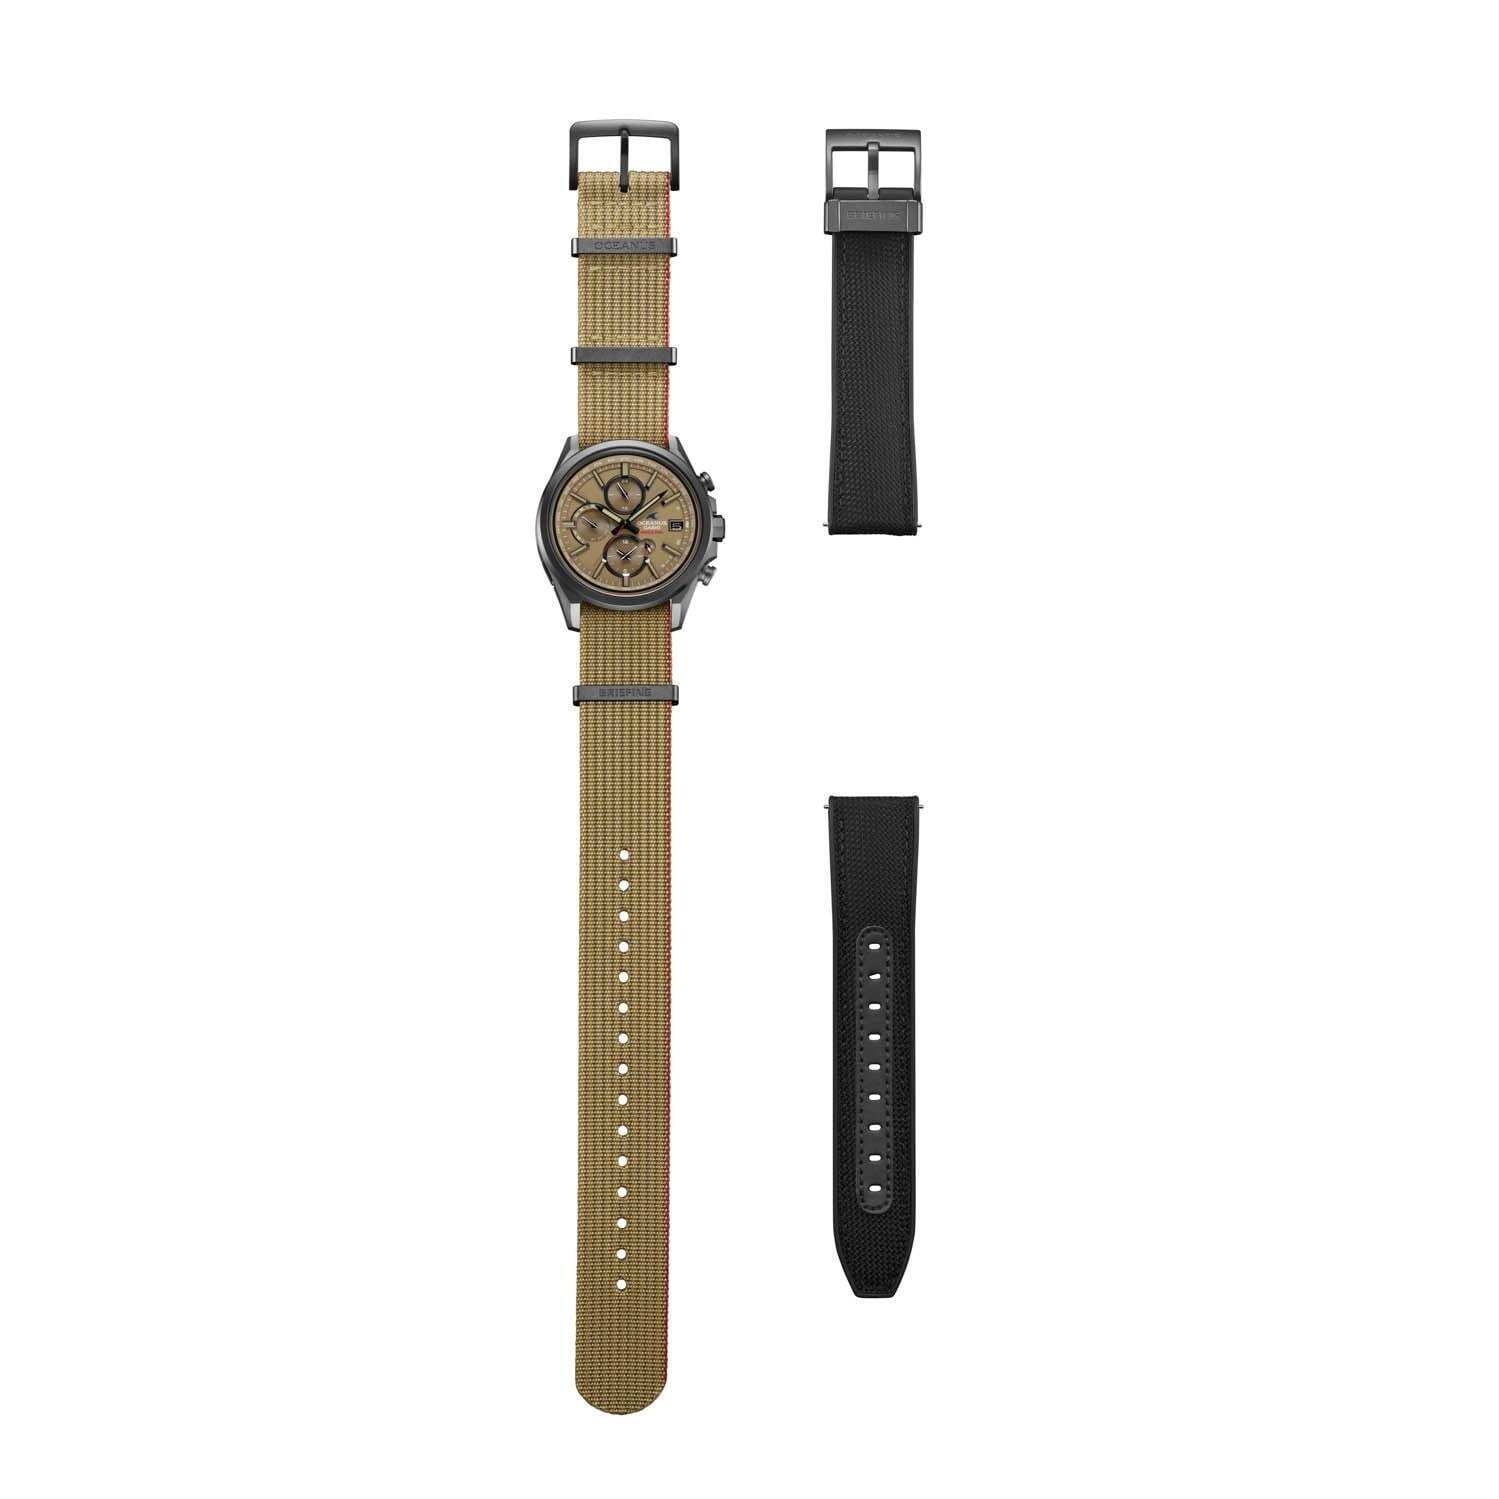 ブリーフィング×カシオ「オシアナス」“コヨーテカラー”の腕時計